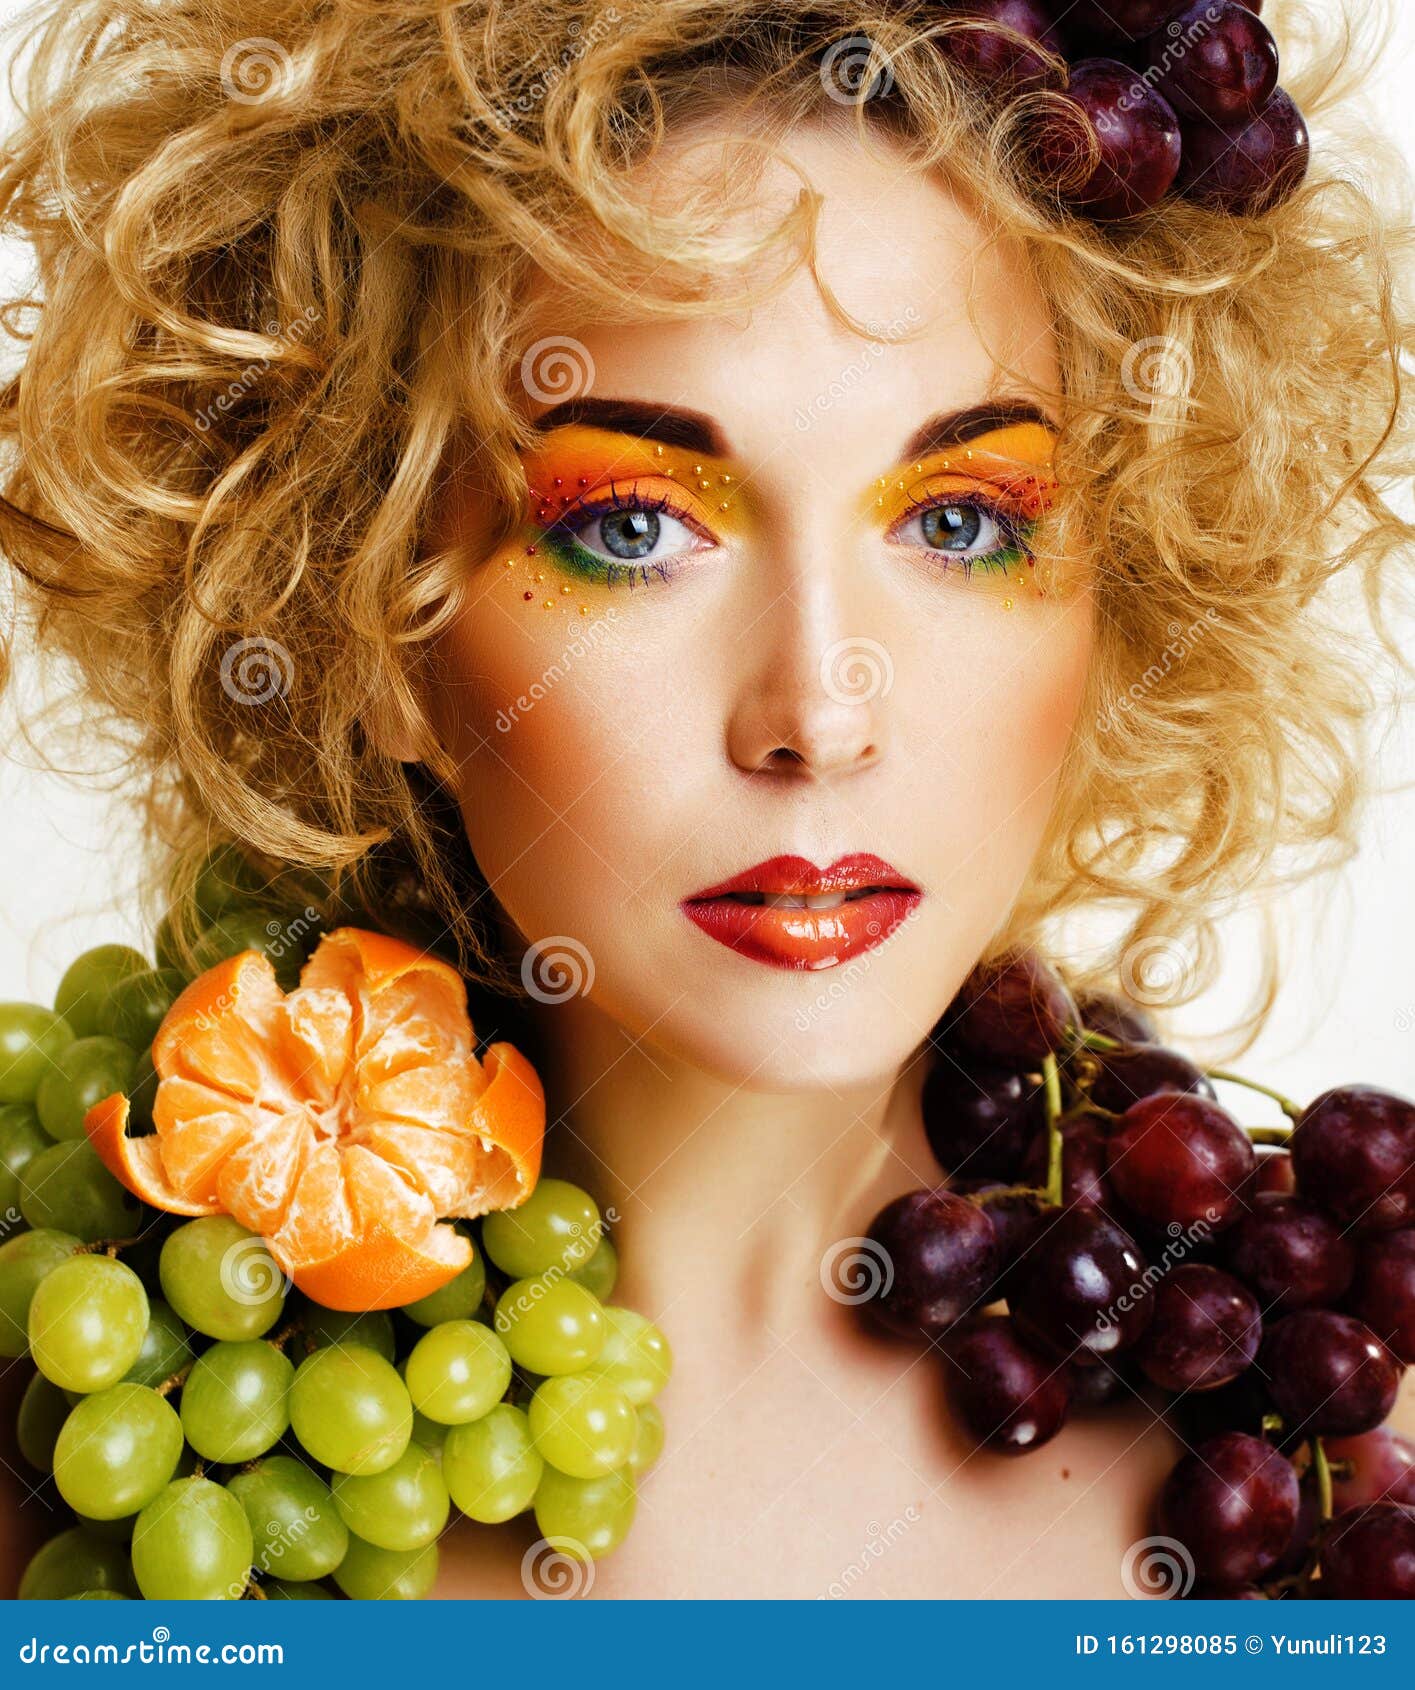 美女画像激动的微笑着幻想的艺术头发化妆风格时装女孩创意的美食水果库存图片 图片包括有食物 艺术